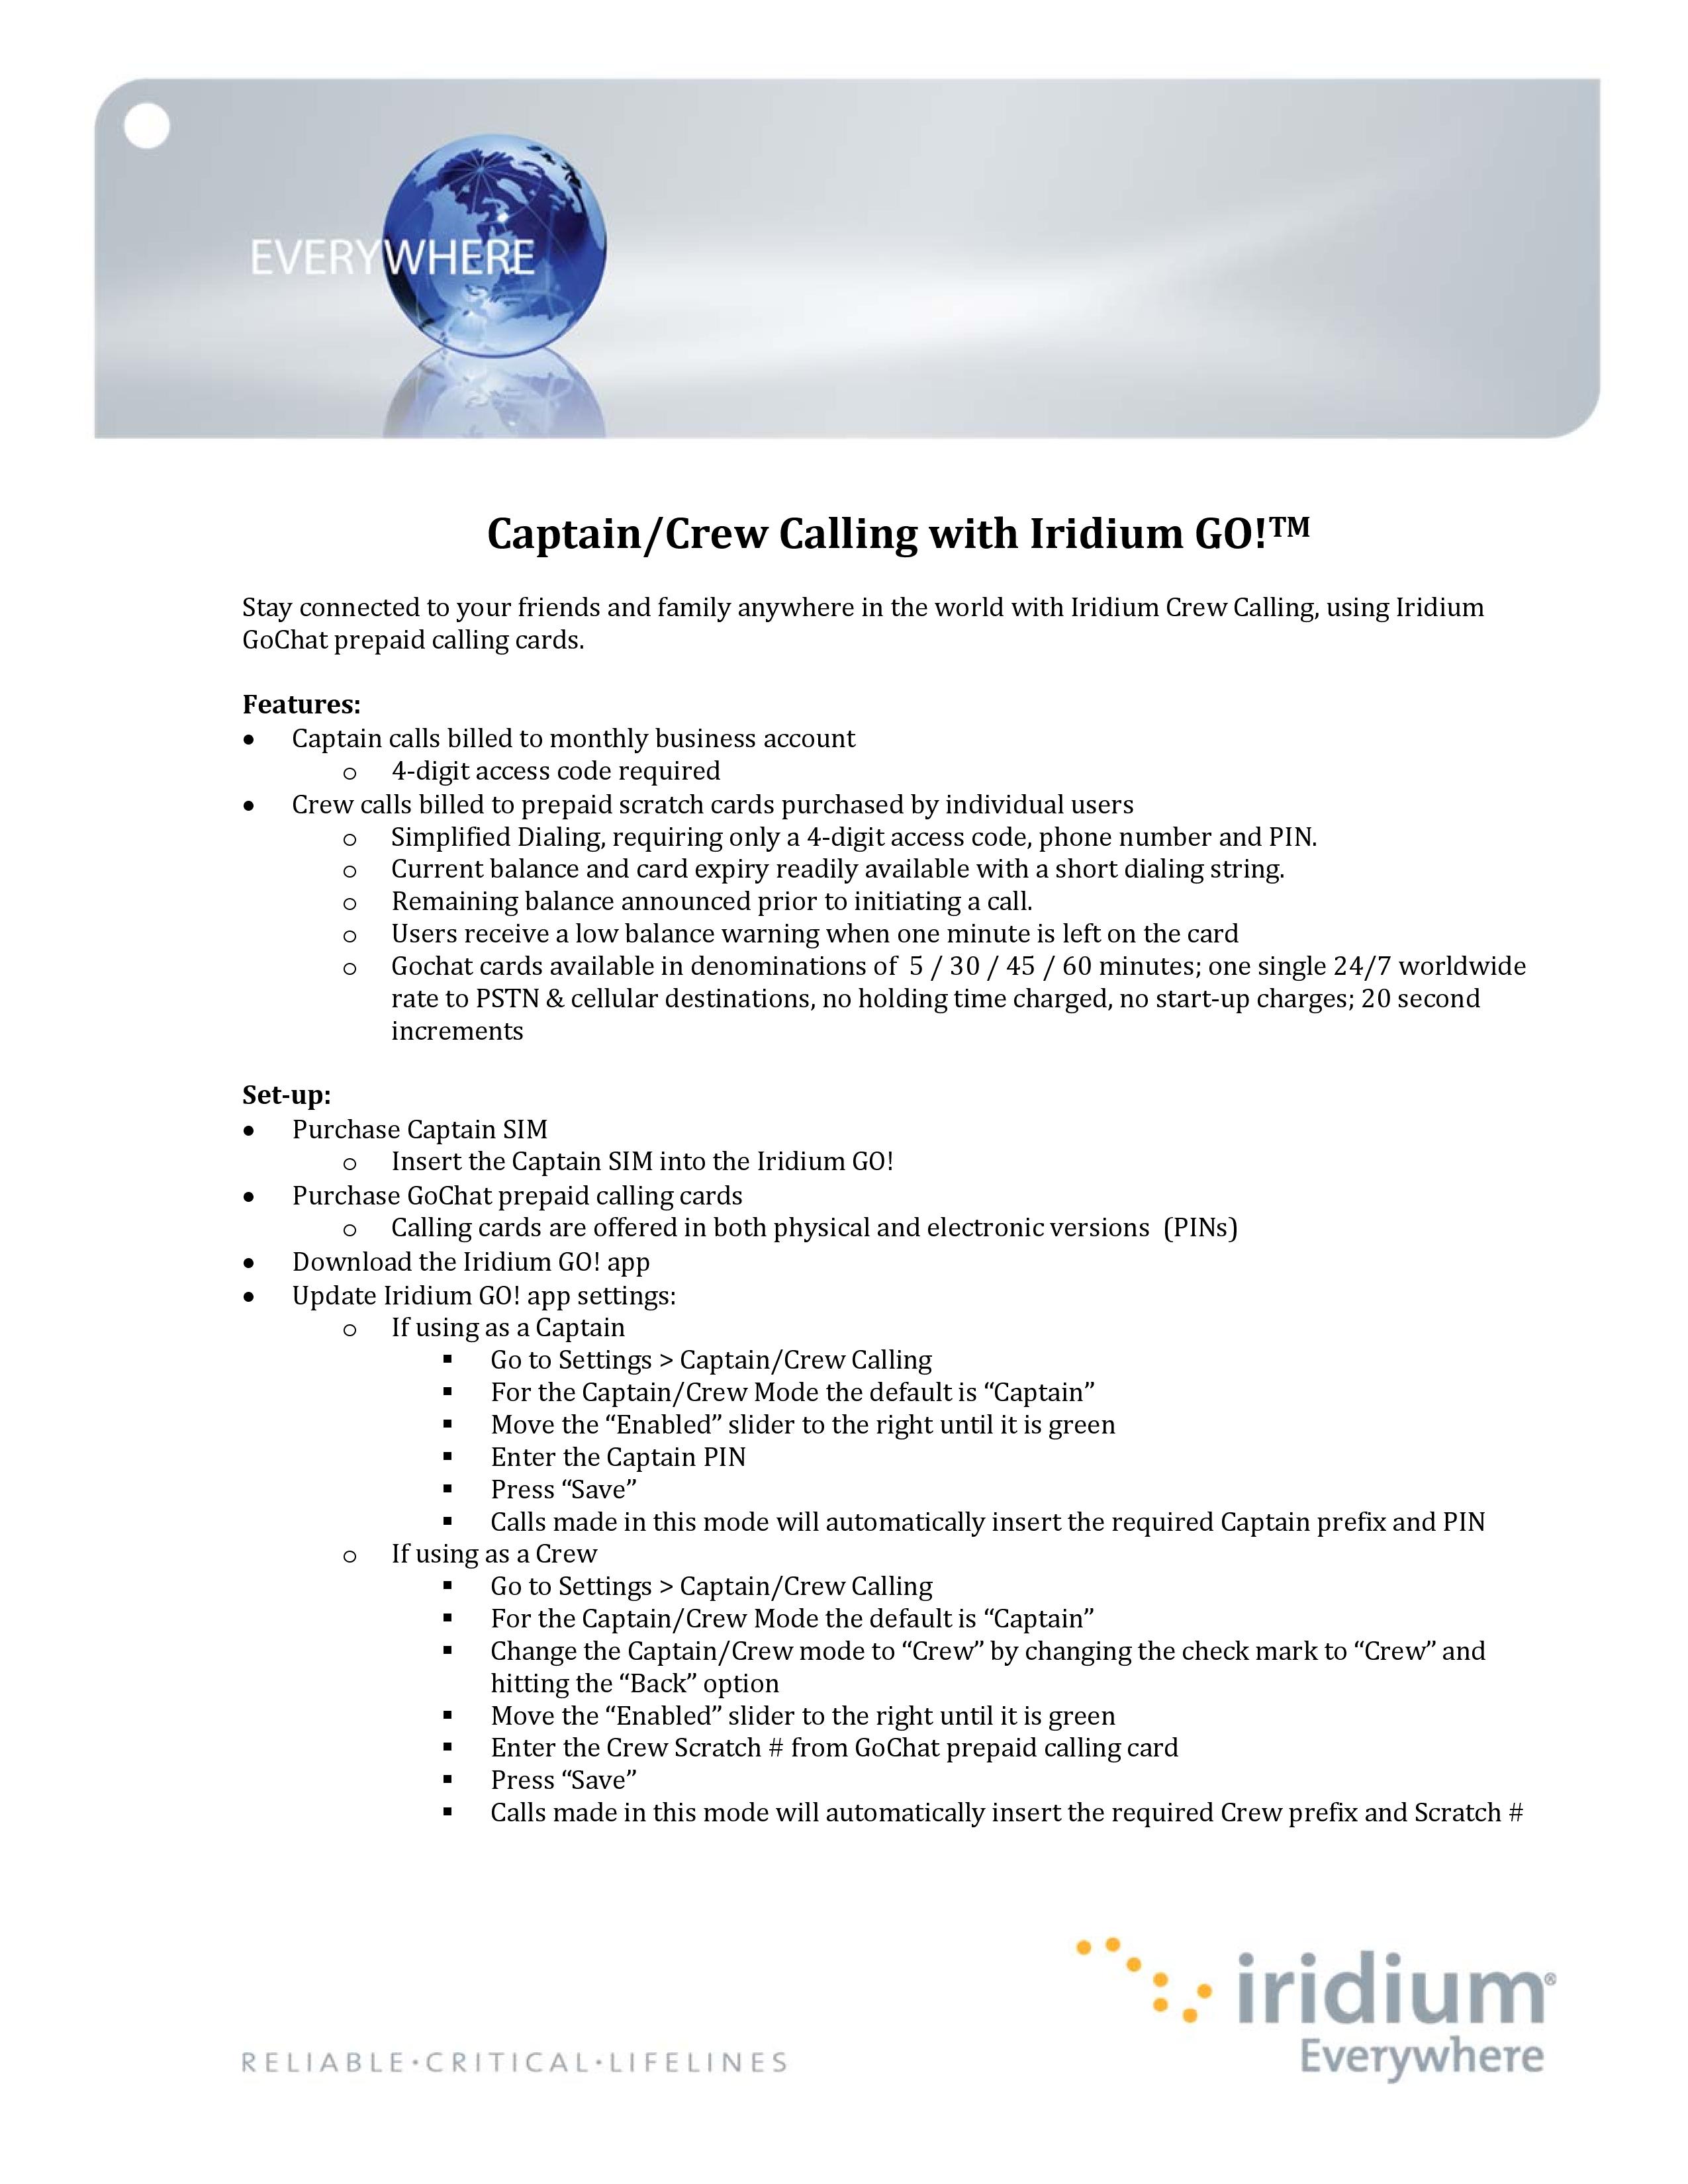 QSG_Iridium_GO__Captain_Crew_Calling_Guide_2013_1_-page-001.jpg